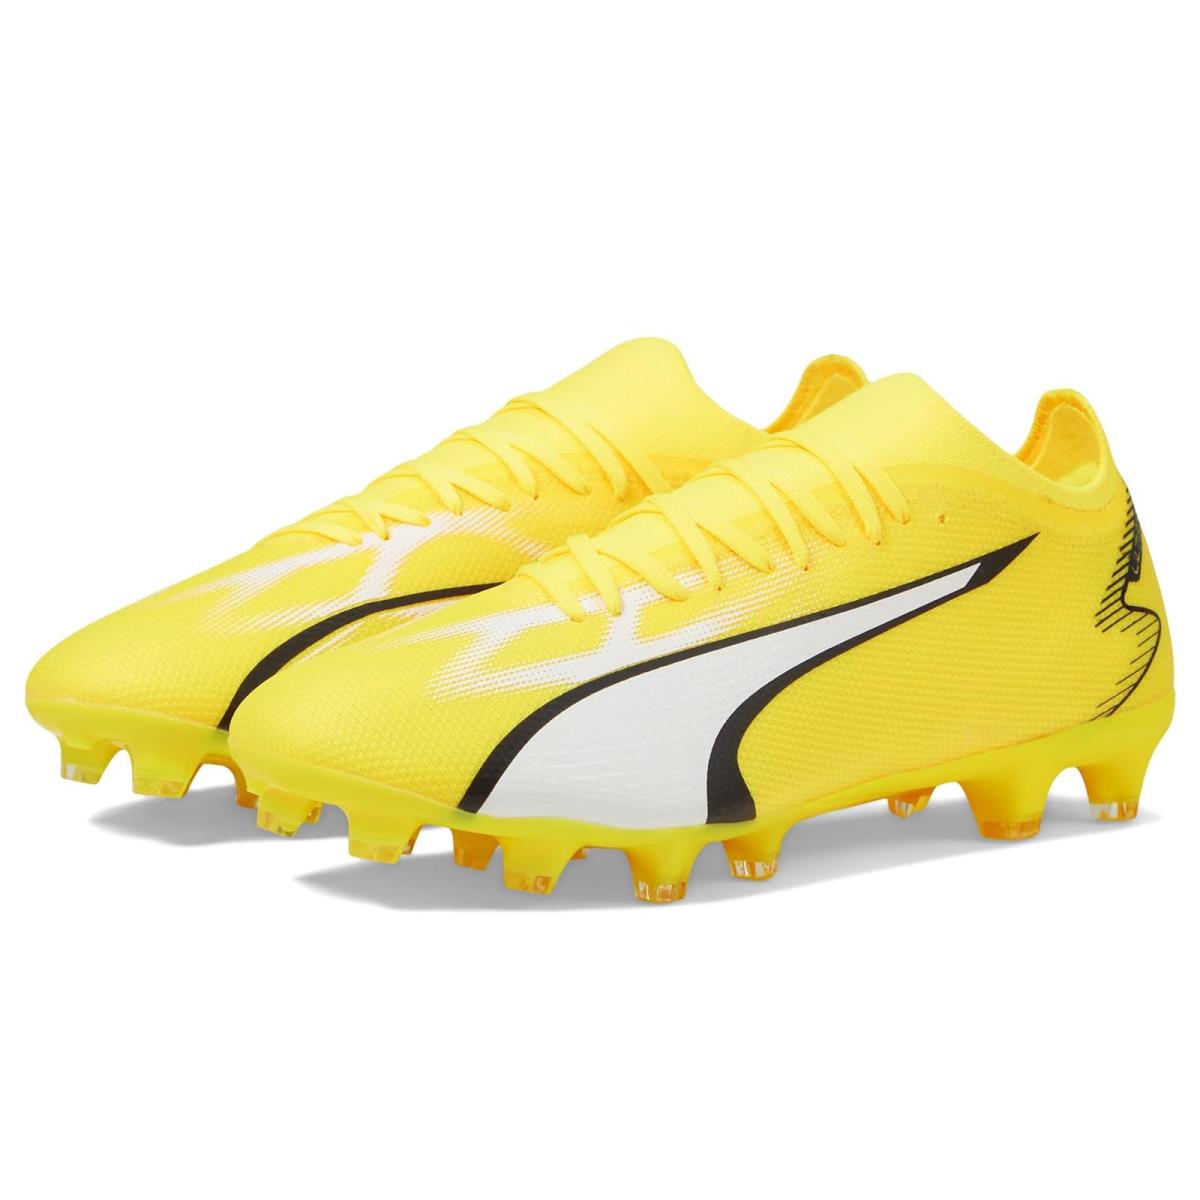 Man`s Shoes Puma Ultra Match Firm Ground/artificial Ground Yellow Blaze/Puma White/Puma Black